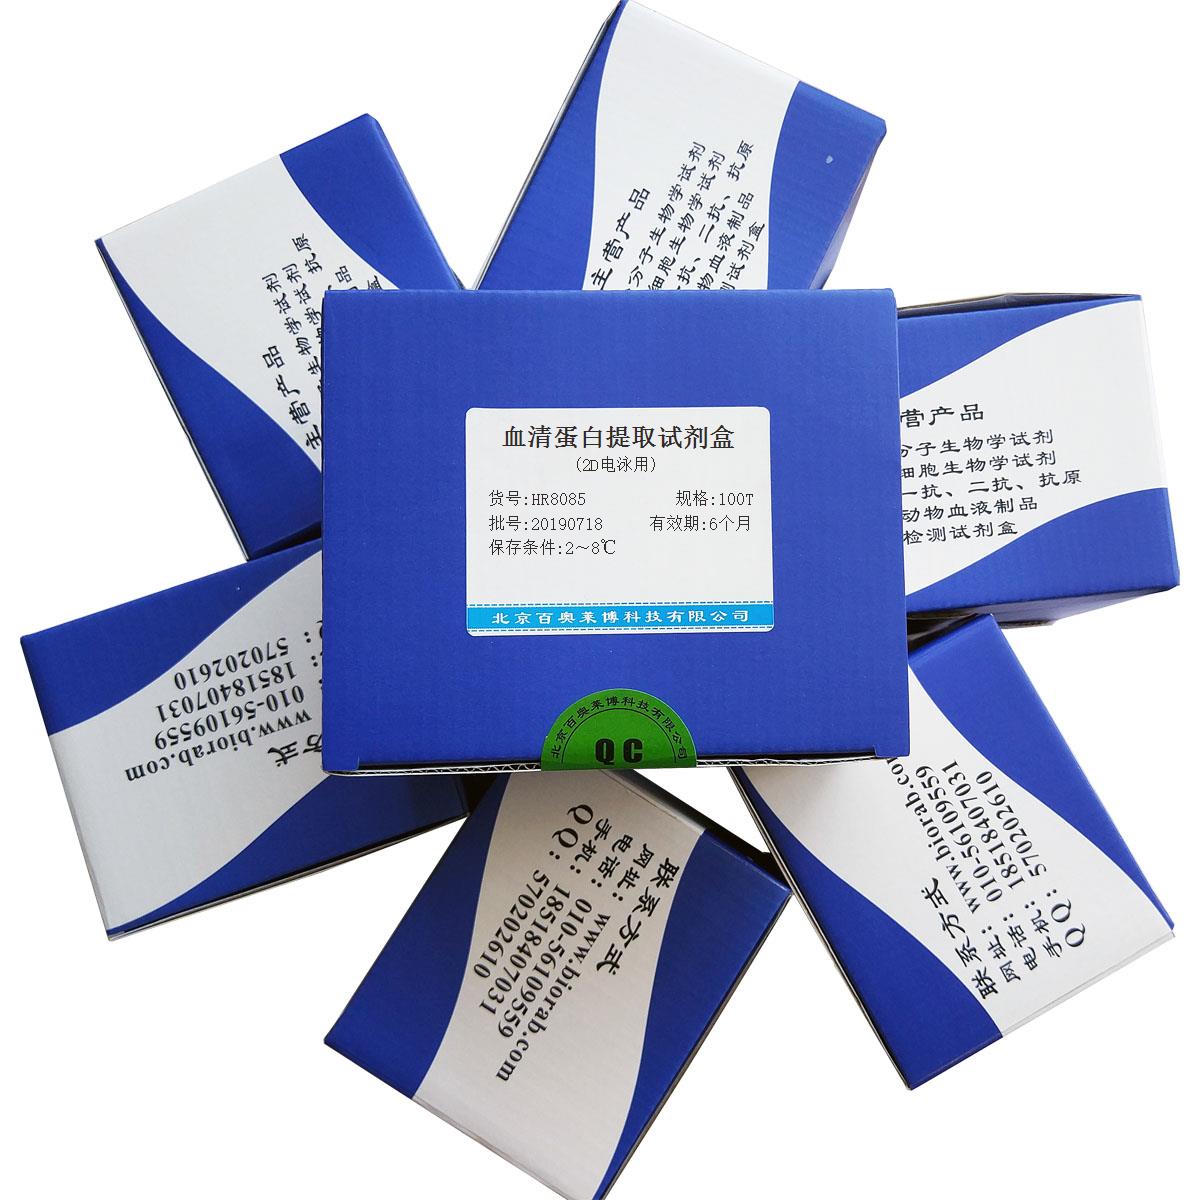 血清蛋白提取试剂盒(2D电泳用)北京厂家